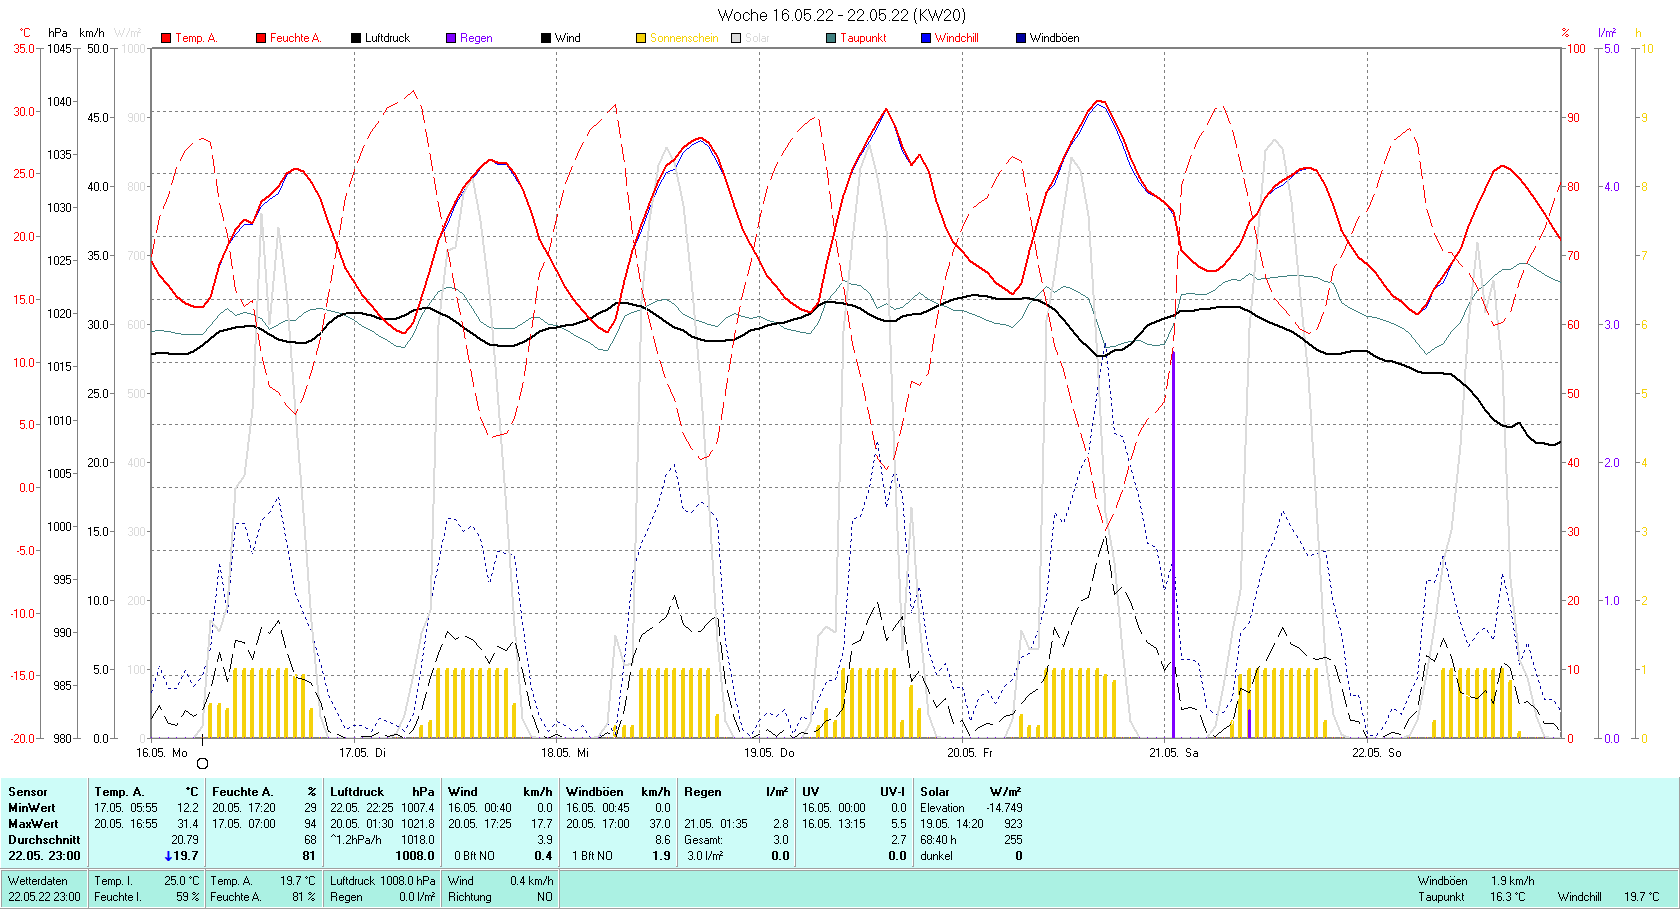 KW 20 Tmin 12.2°C, Tmax 31.4°C, Sonne 68:40 h Niederschlag 3.0 mm2